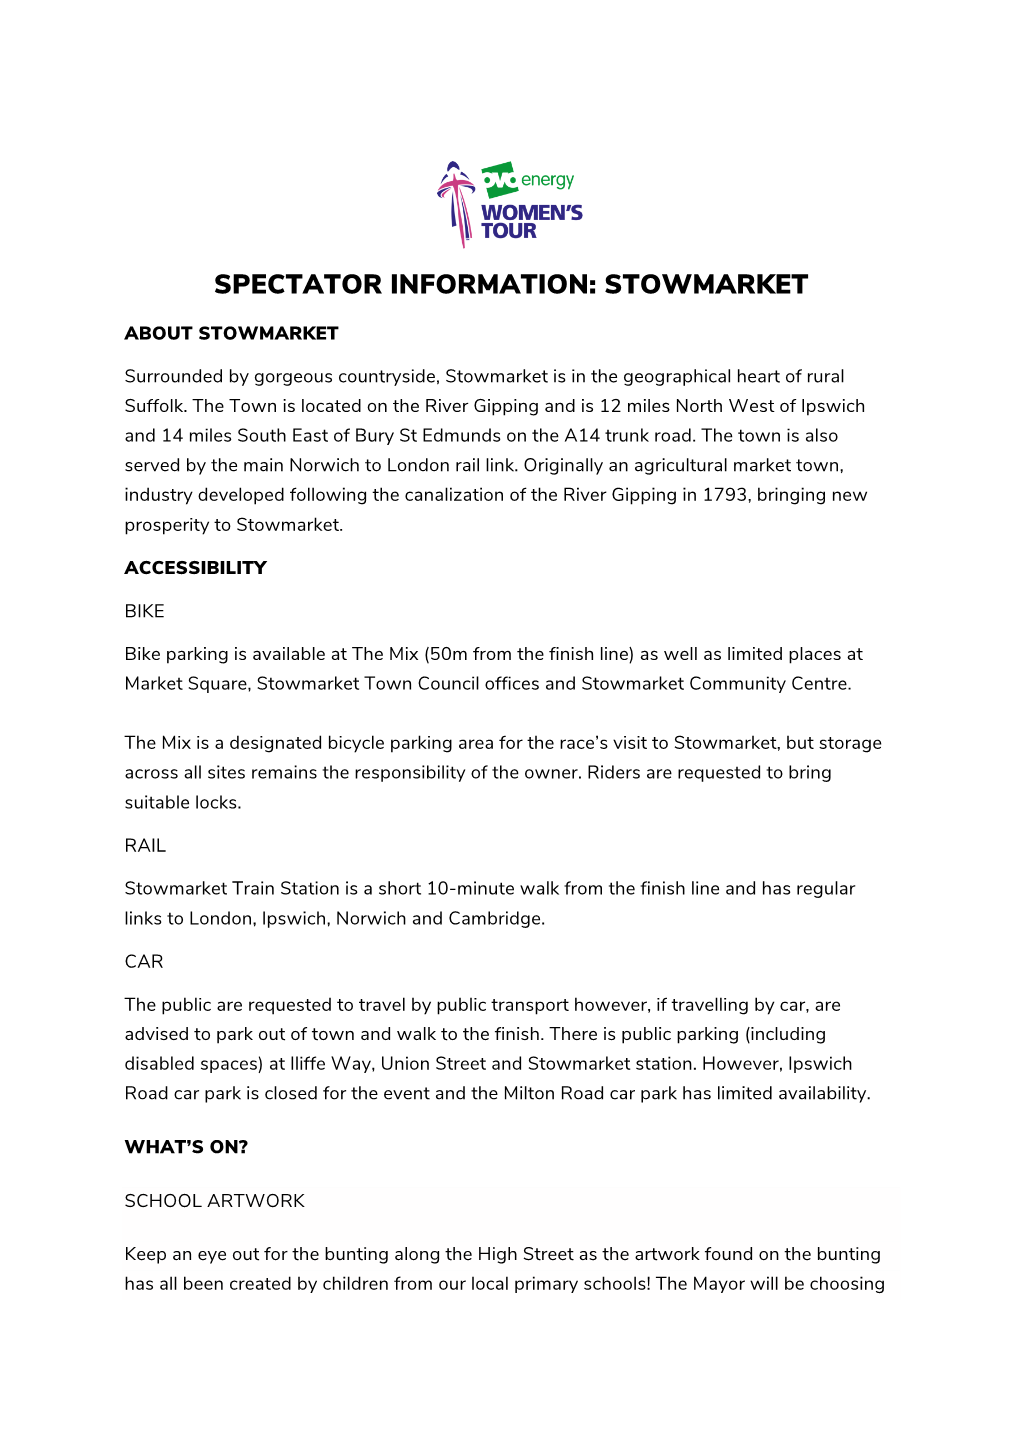 Spectator Information: Stowmarket